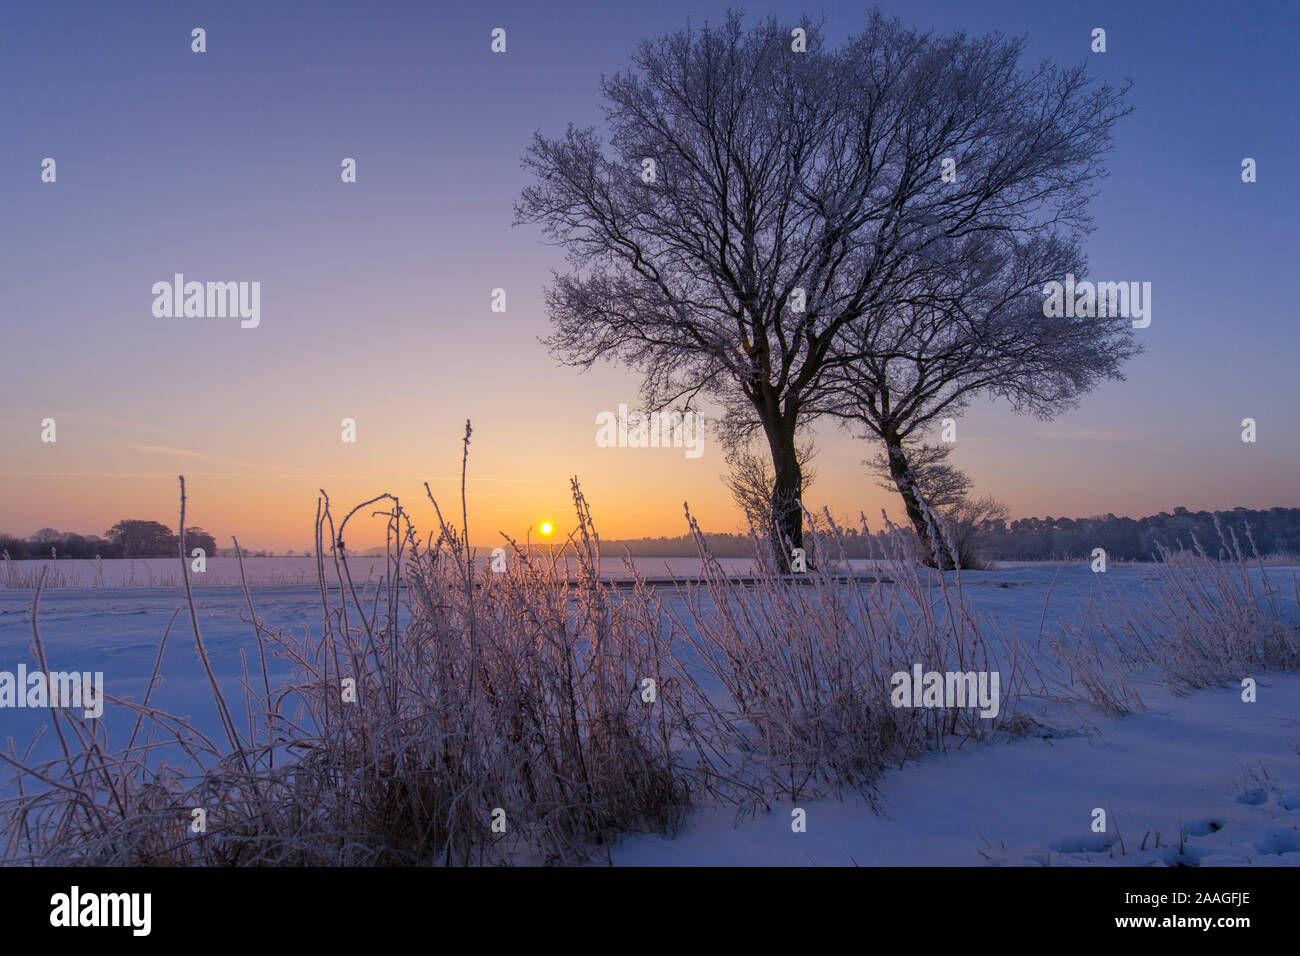 Baum im Winter, Sonnenuntergang, blaue Stunde, Goldenstedter Moor, Niedersachsen Stock Photo